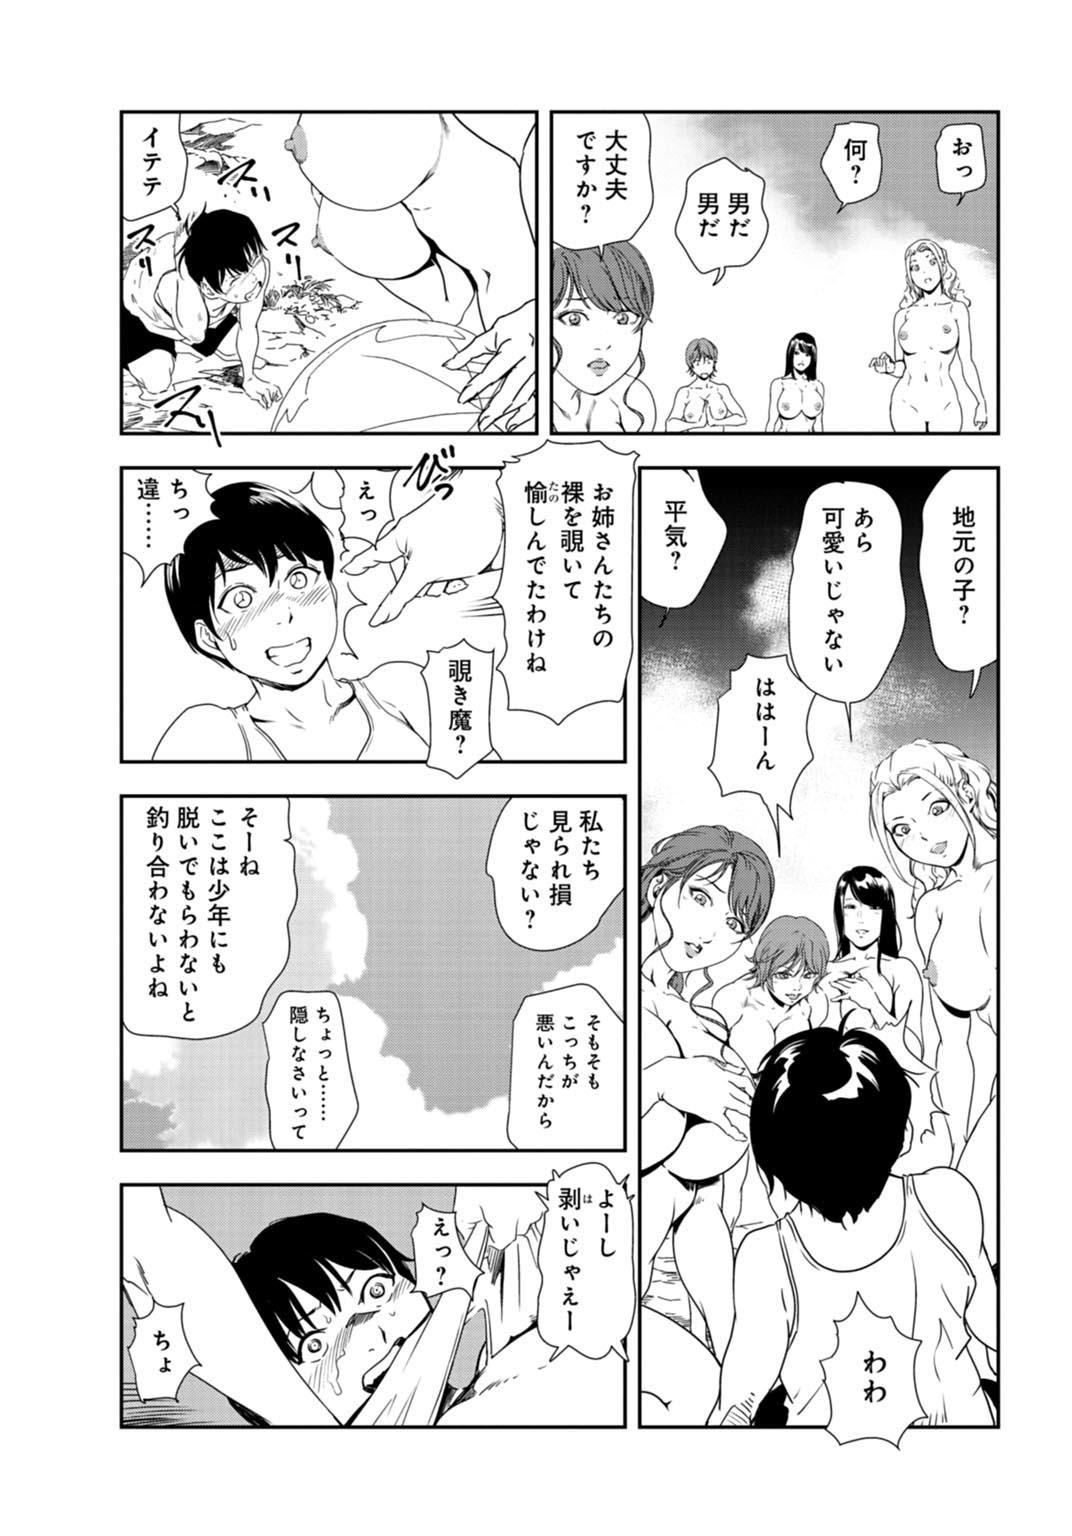 Chibola Nikuhisyo Yukiko 31 Ass Fetish - Page 8